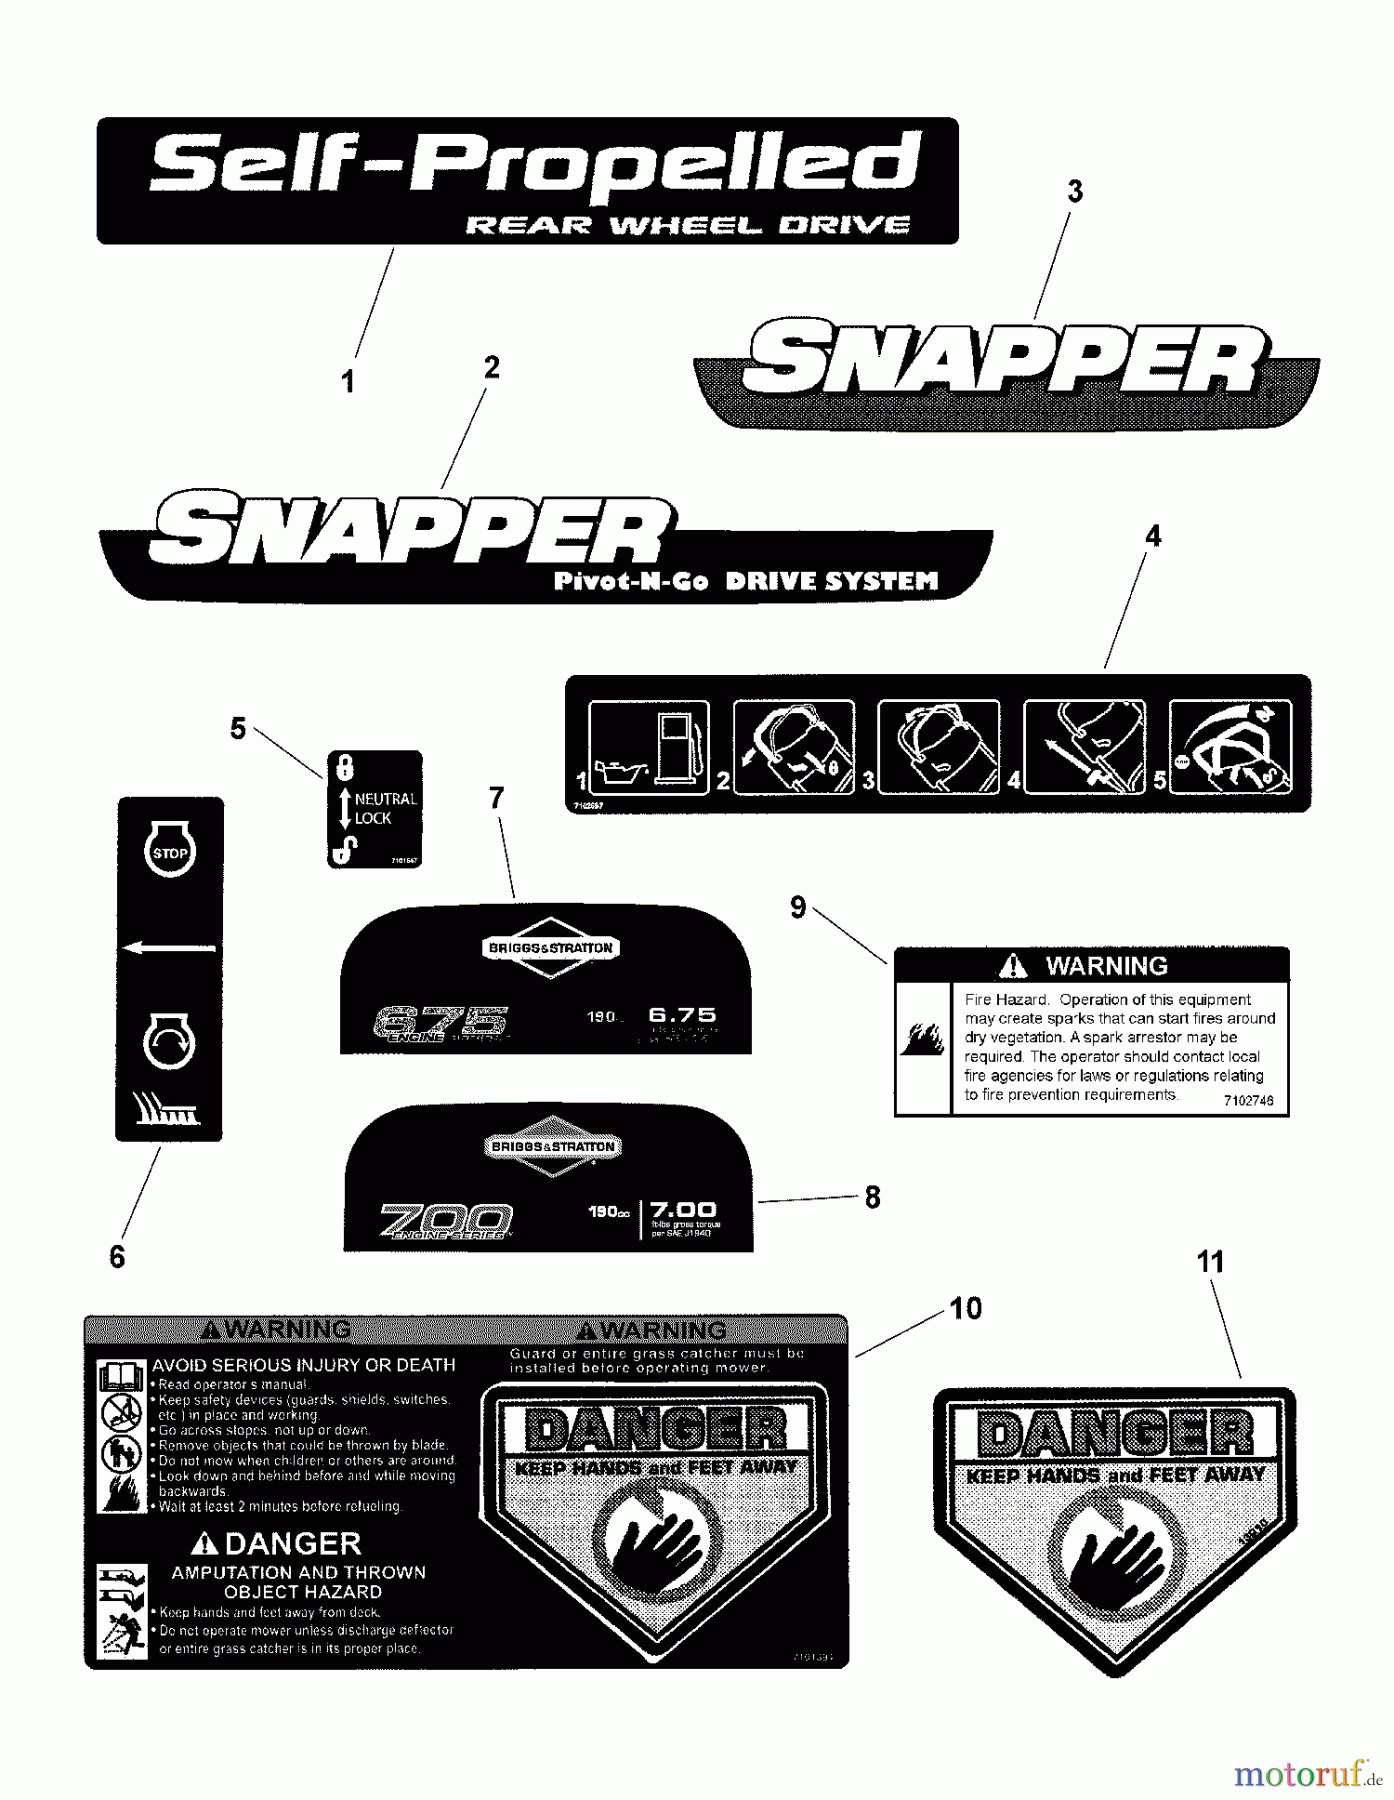  Snapper Rasenmäher NSPVH21675 (7800449) - Snapper 21